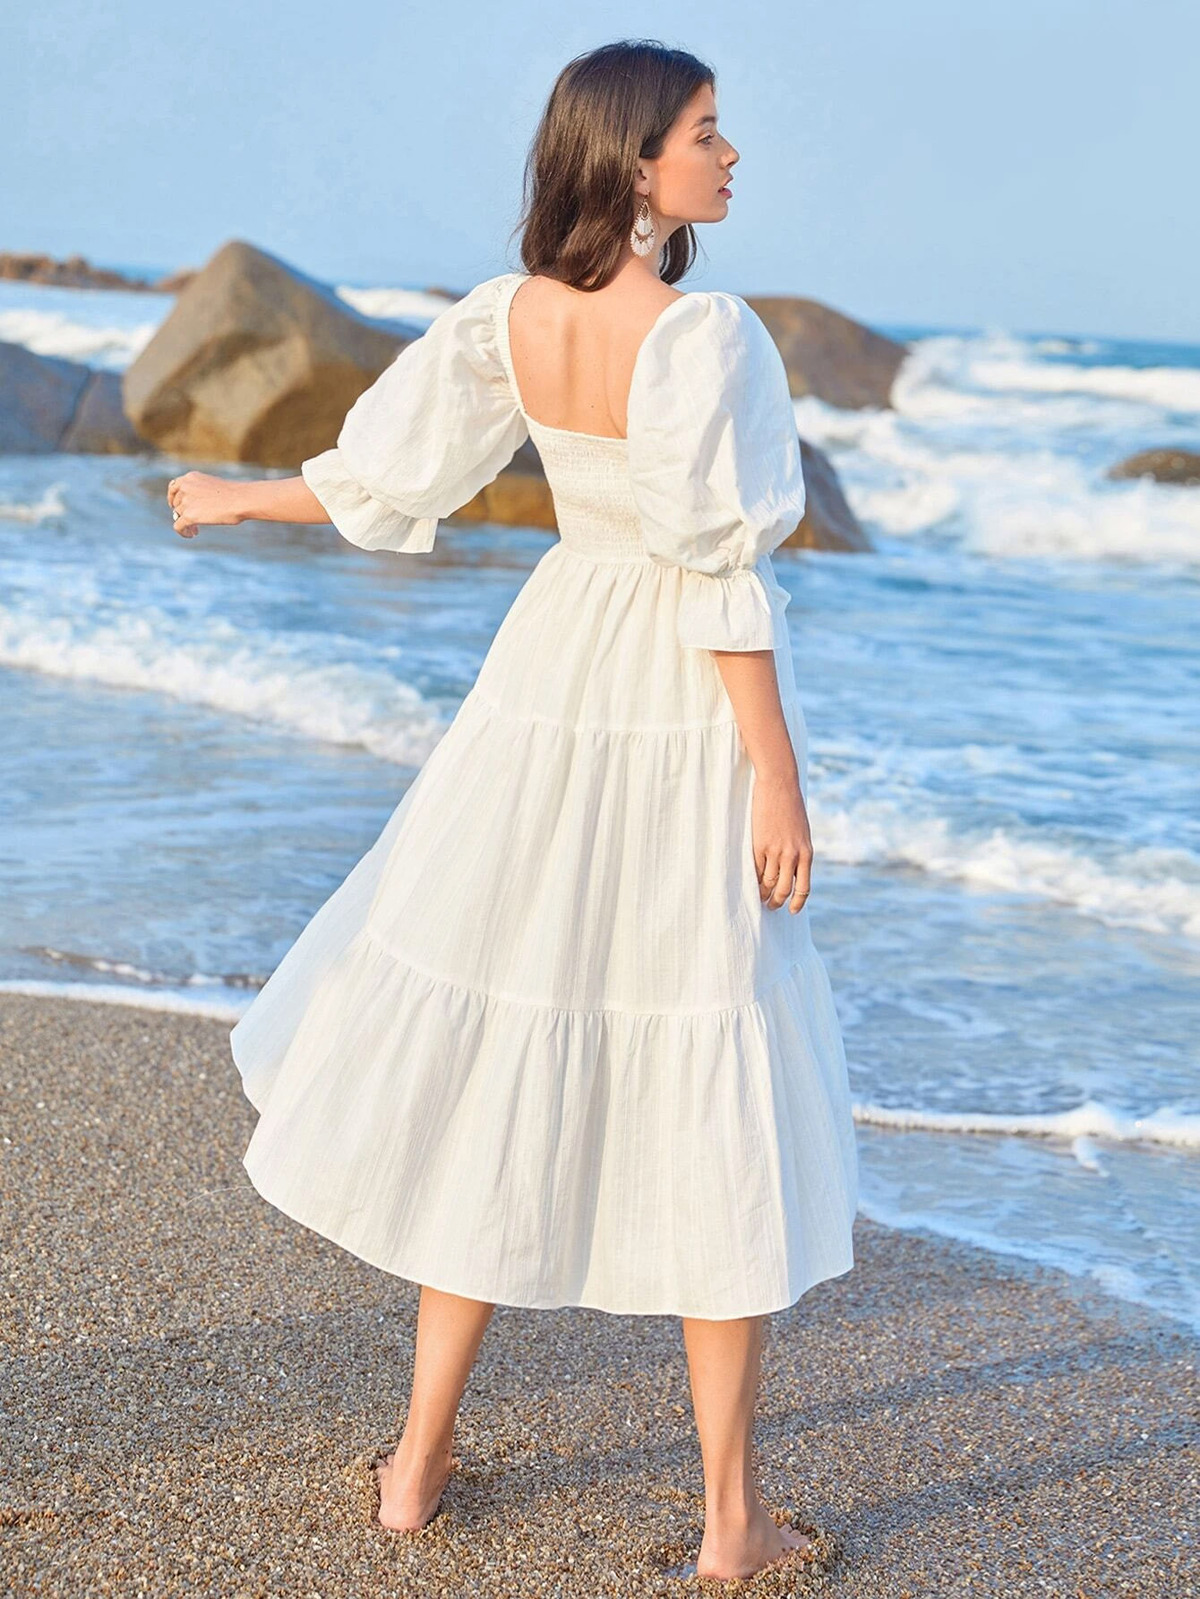 Váy đi biển 2020 màu trắng trễ vai đẹp - Migu Shop